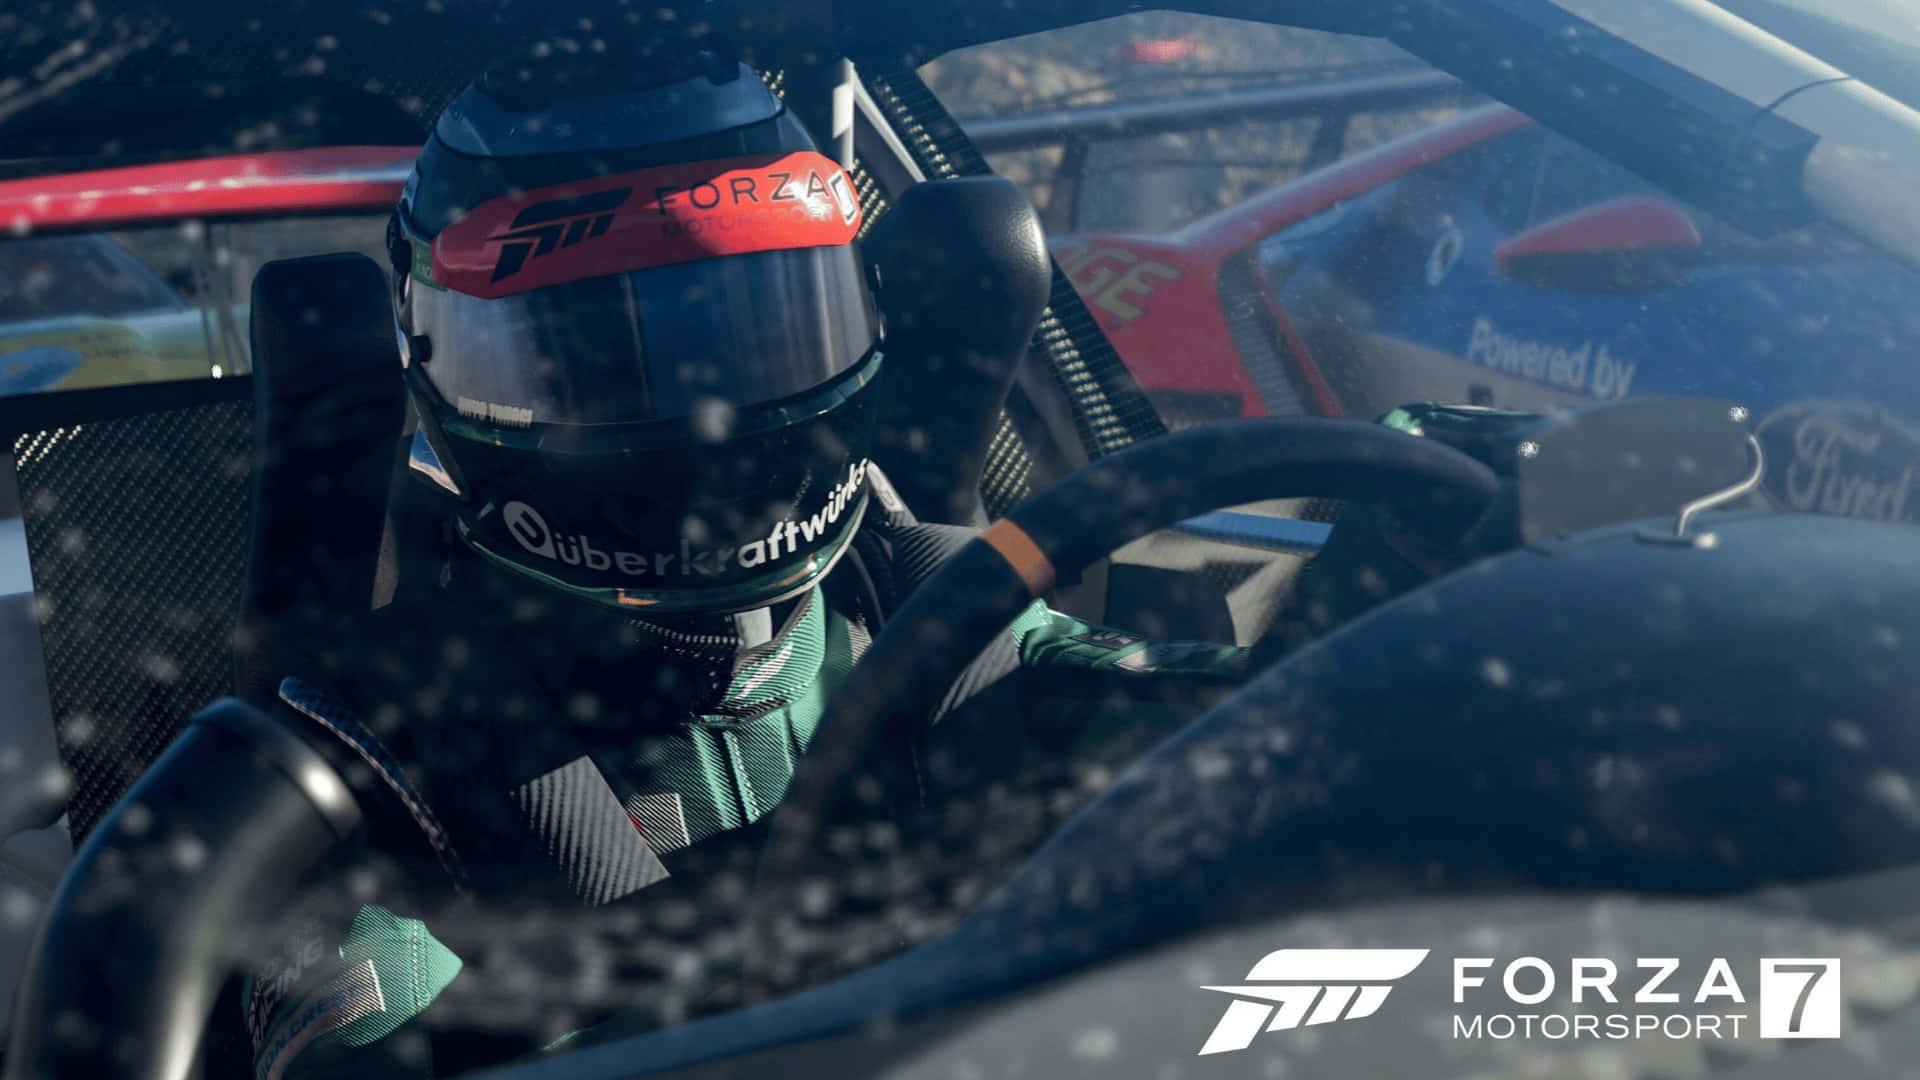 Ipiloti Pronti Per L'azione Di Guida In Forza Motorsport 7